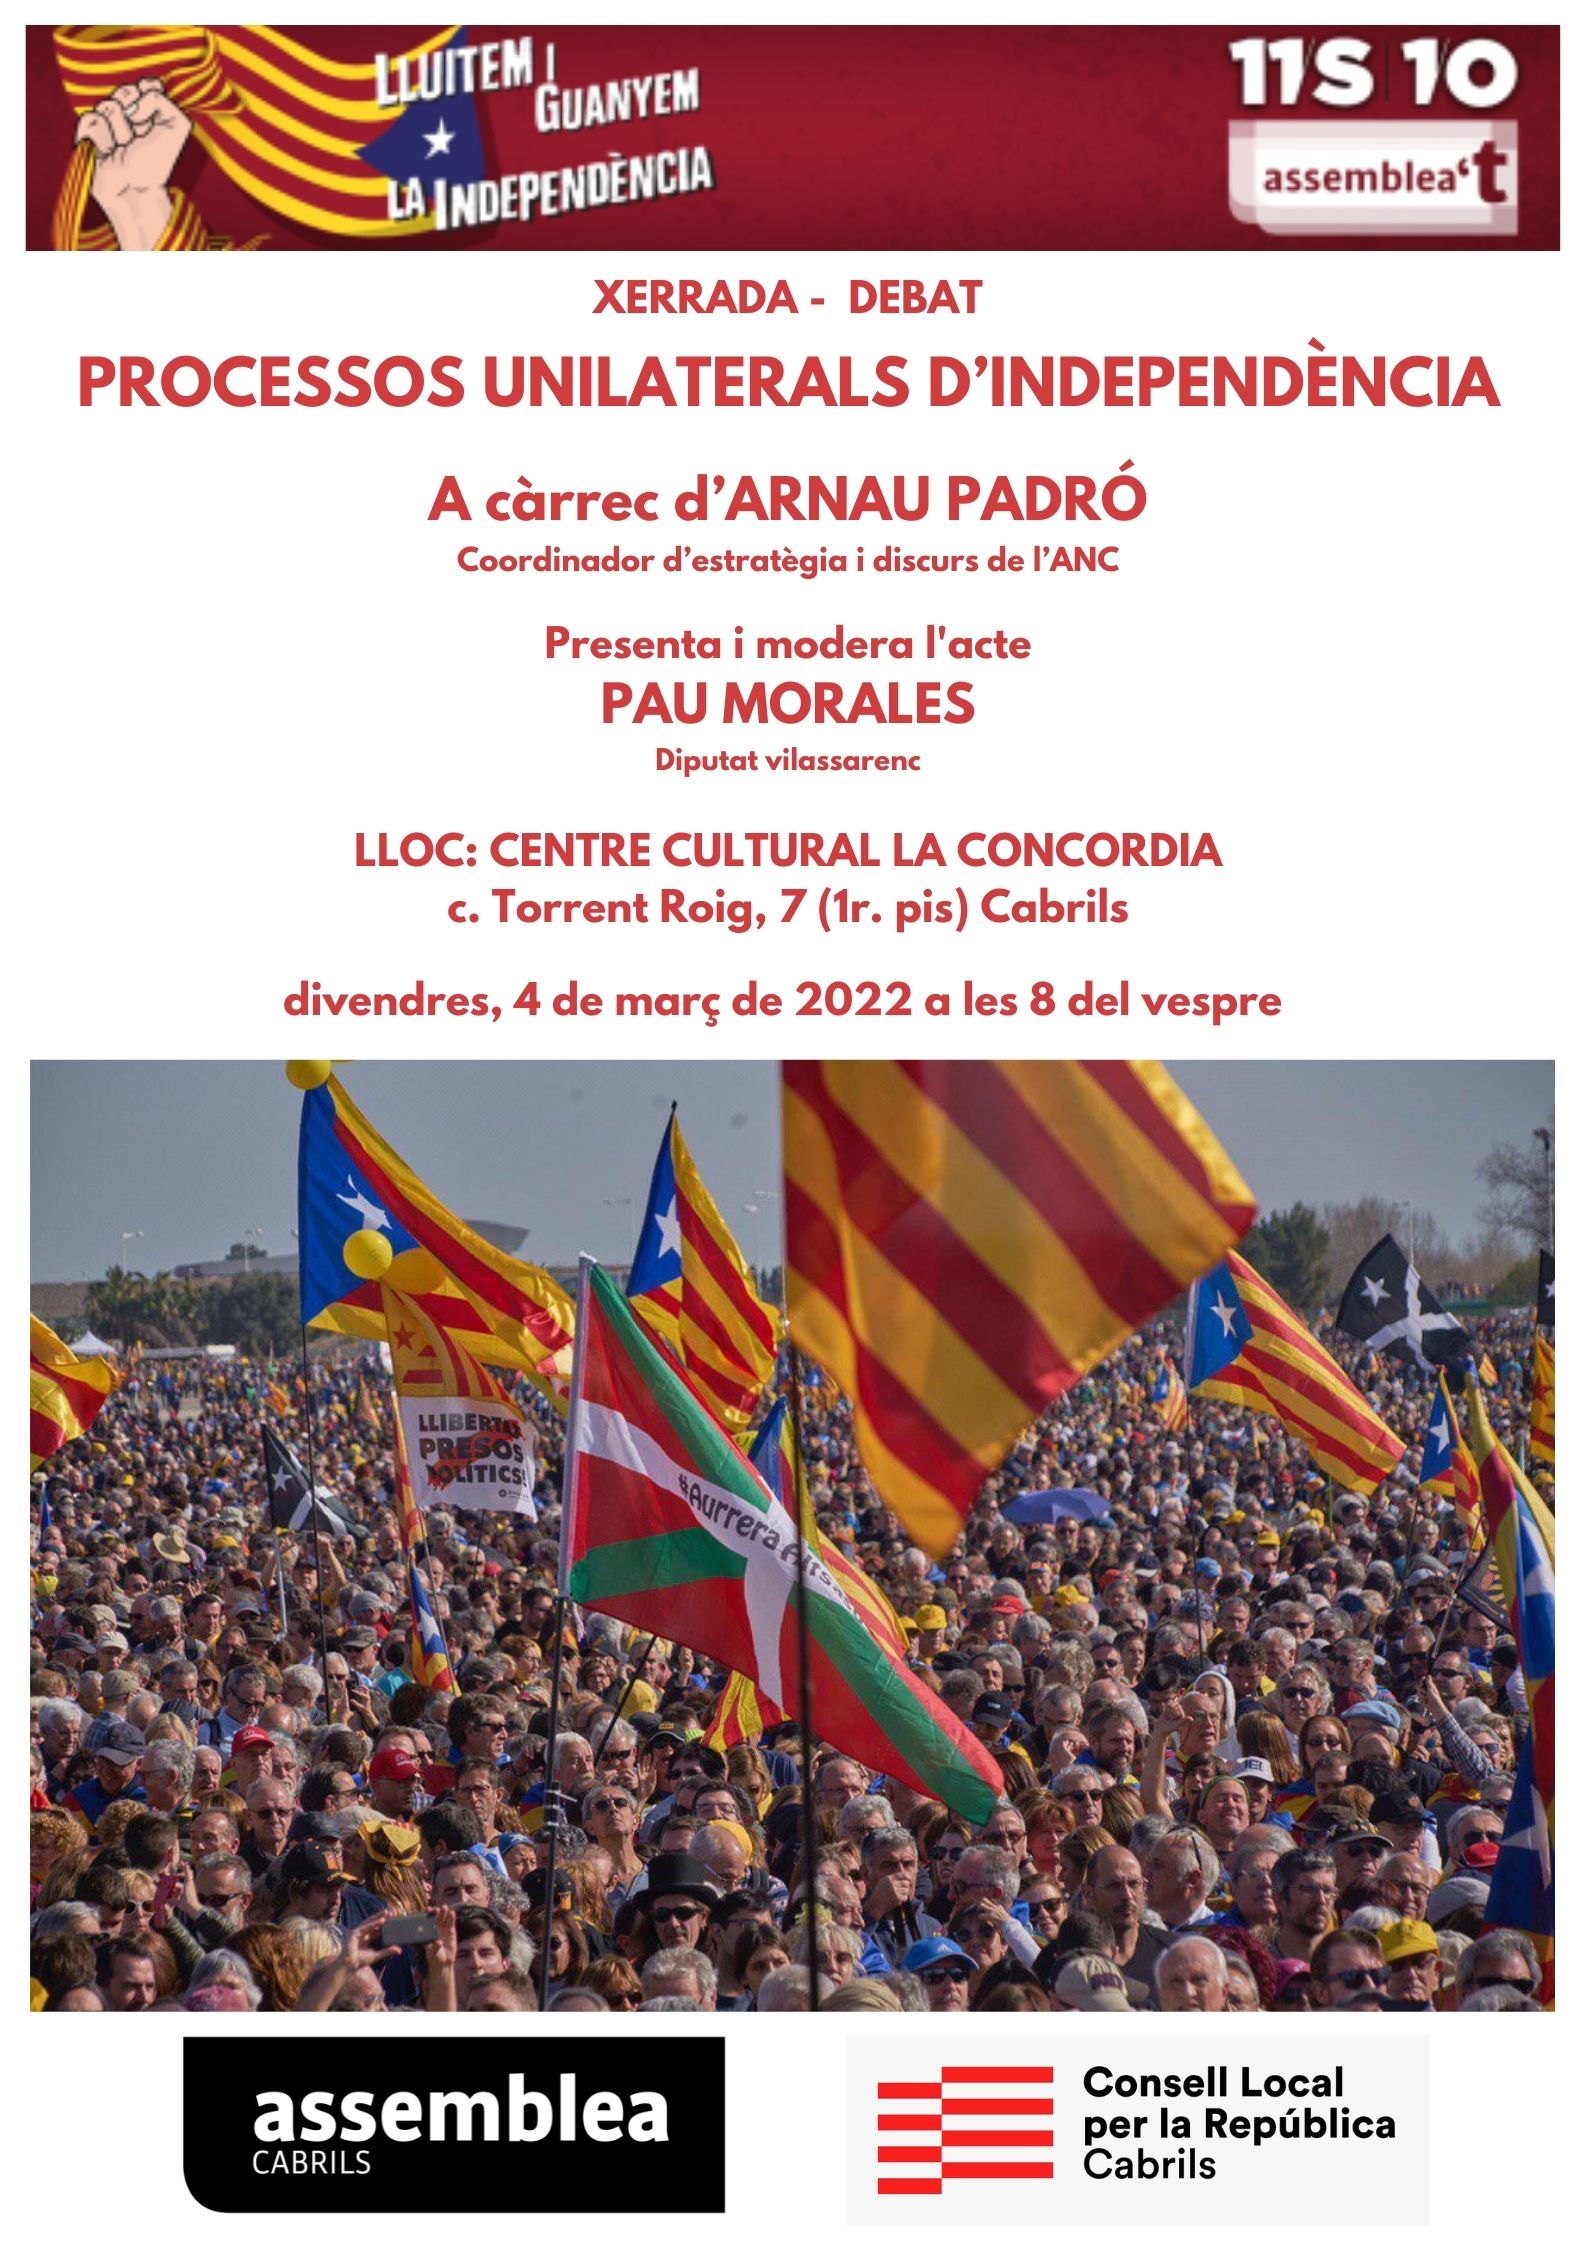 Processos unilaterals d'independència